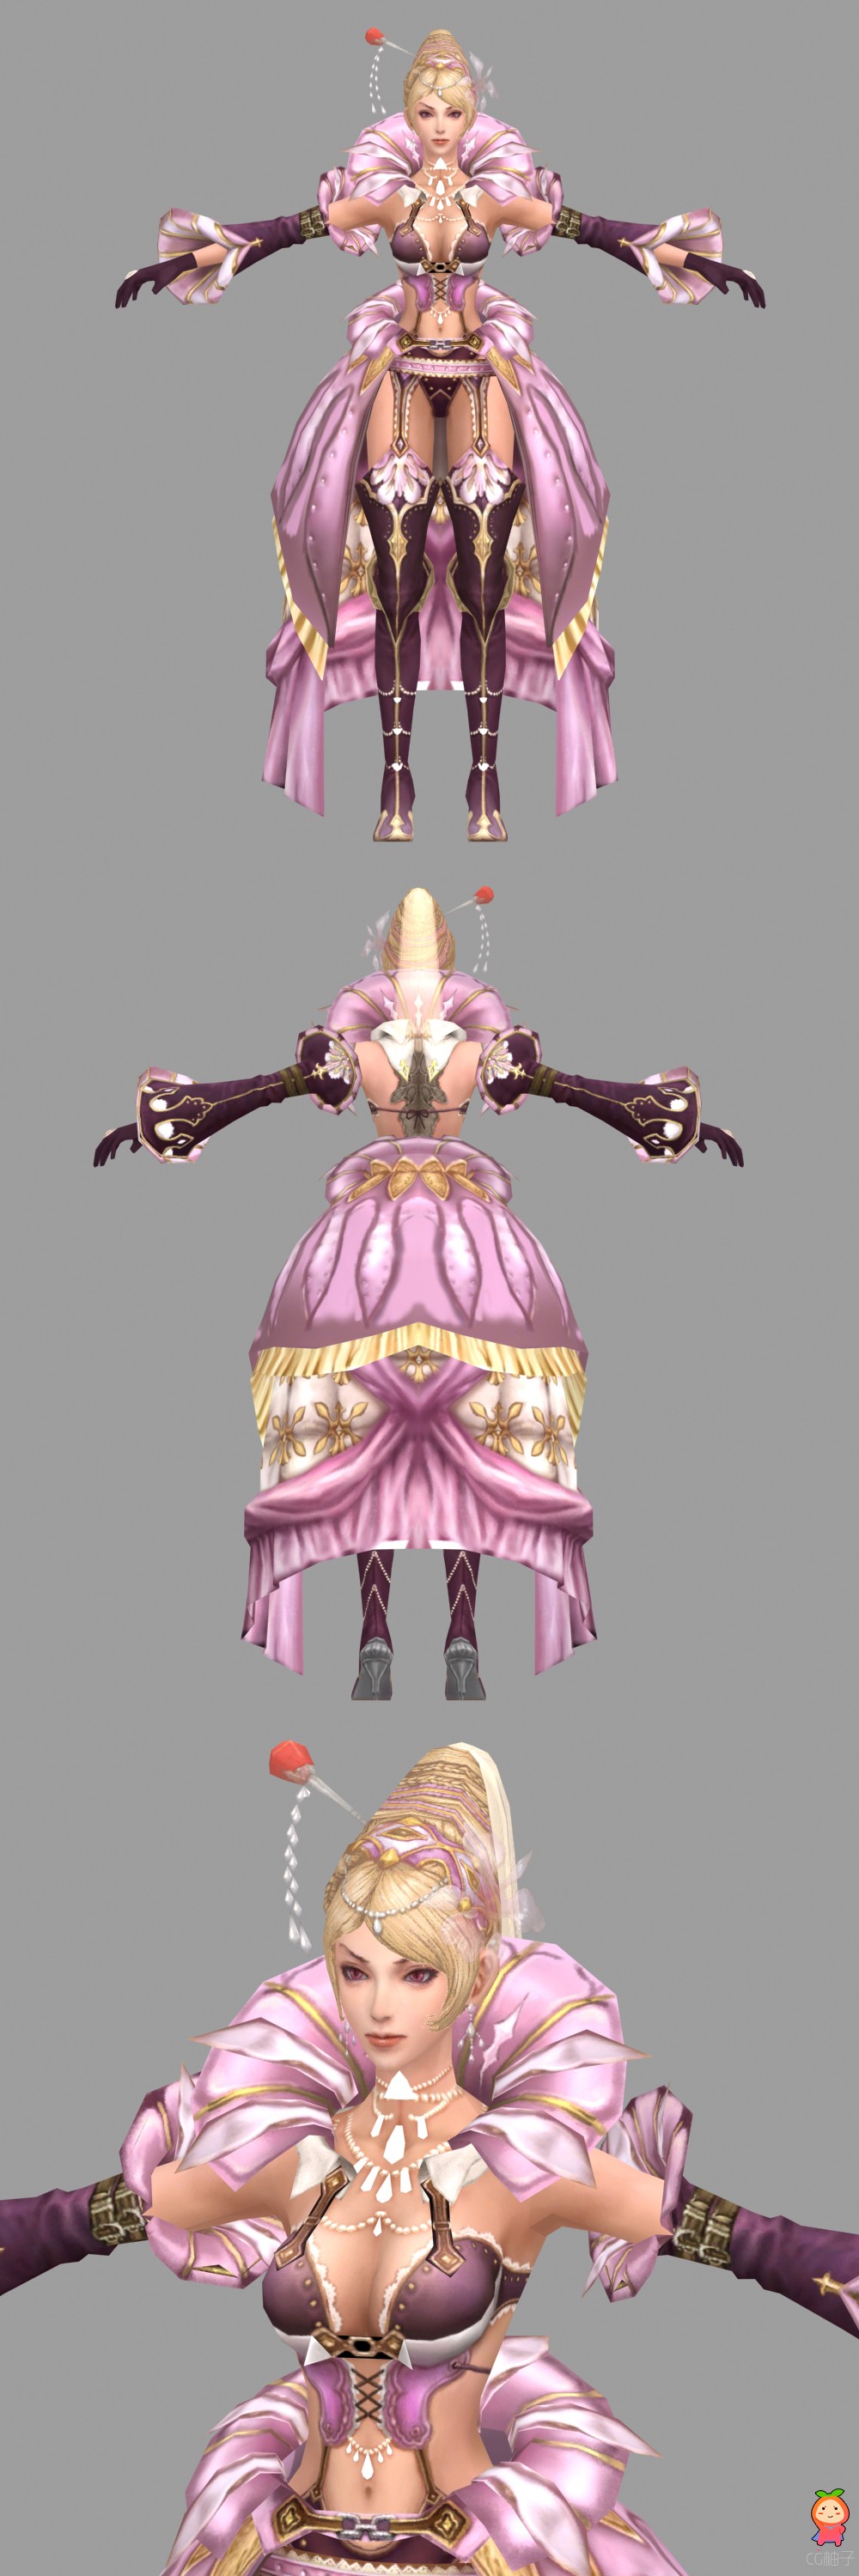 《卓越之剑》冰雪女王hellena3D模型,古代美女3D角色模型下载